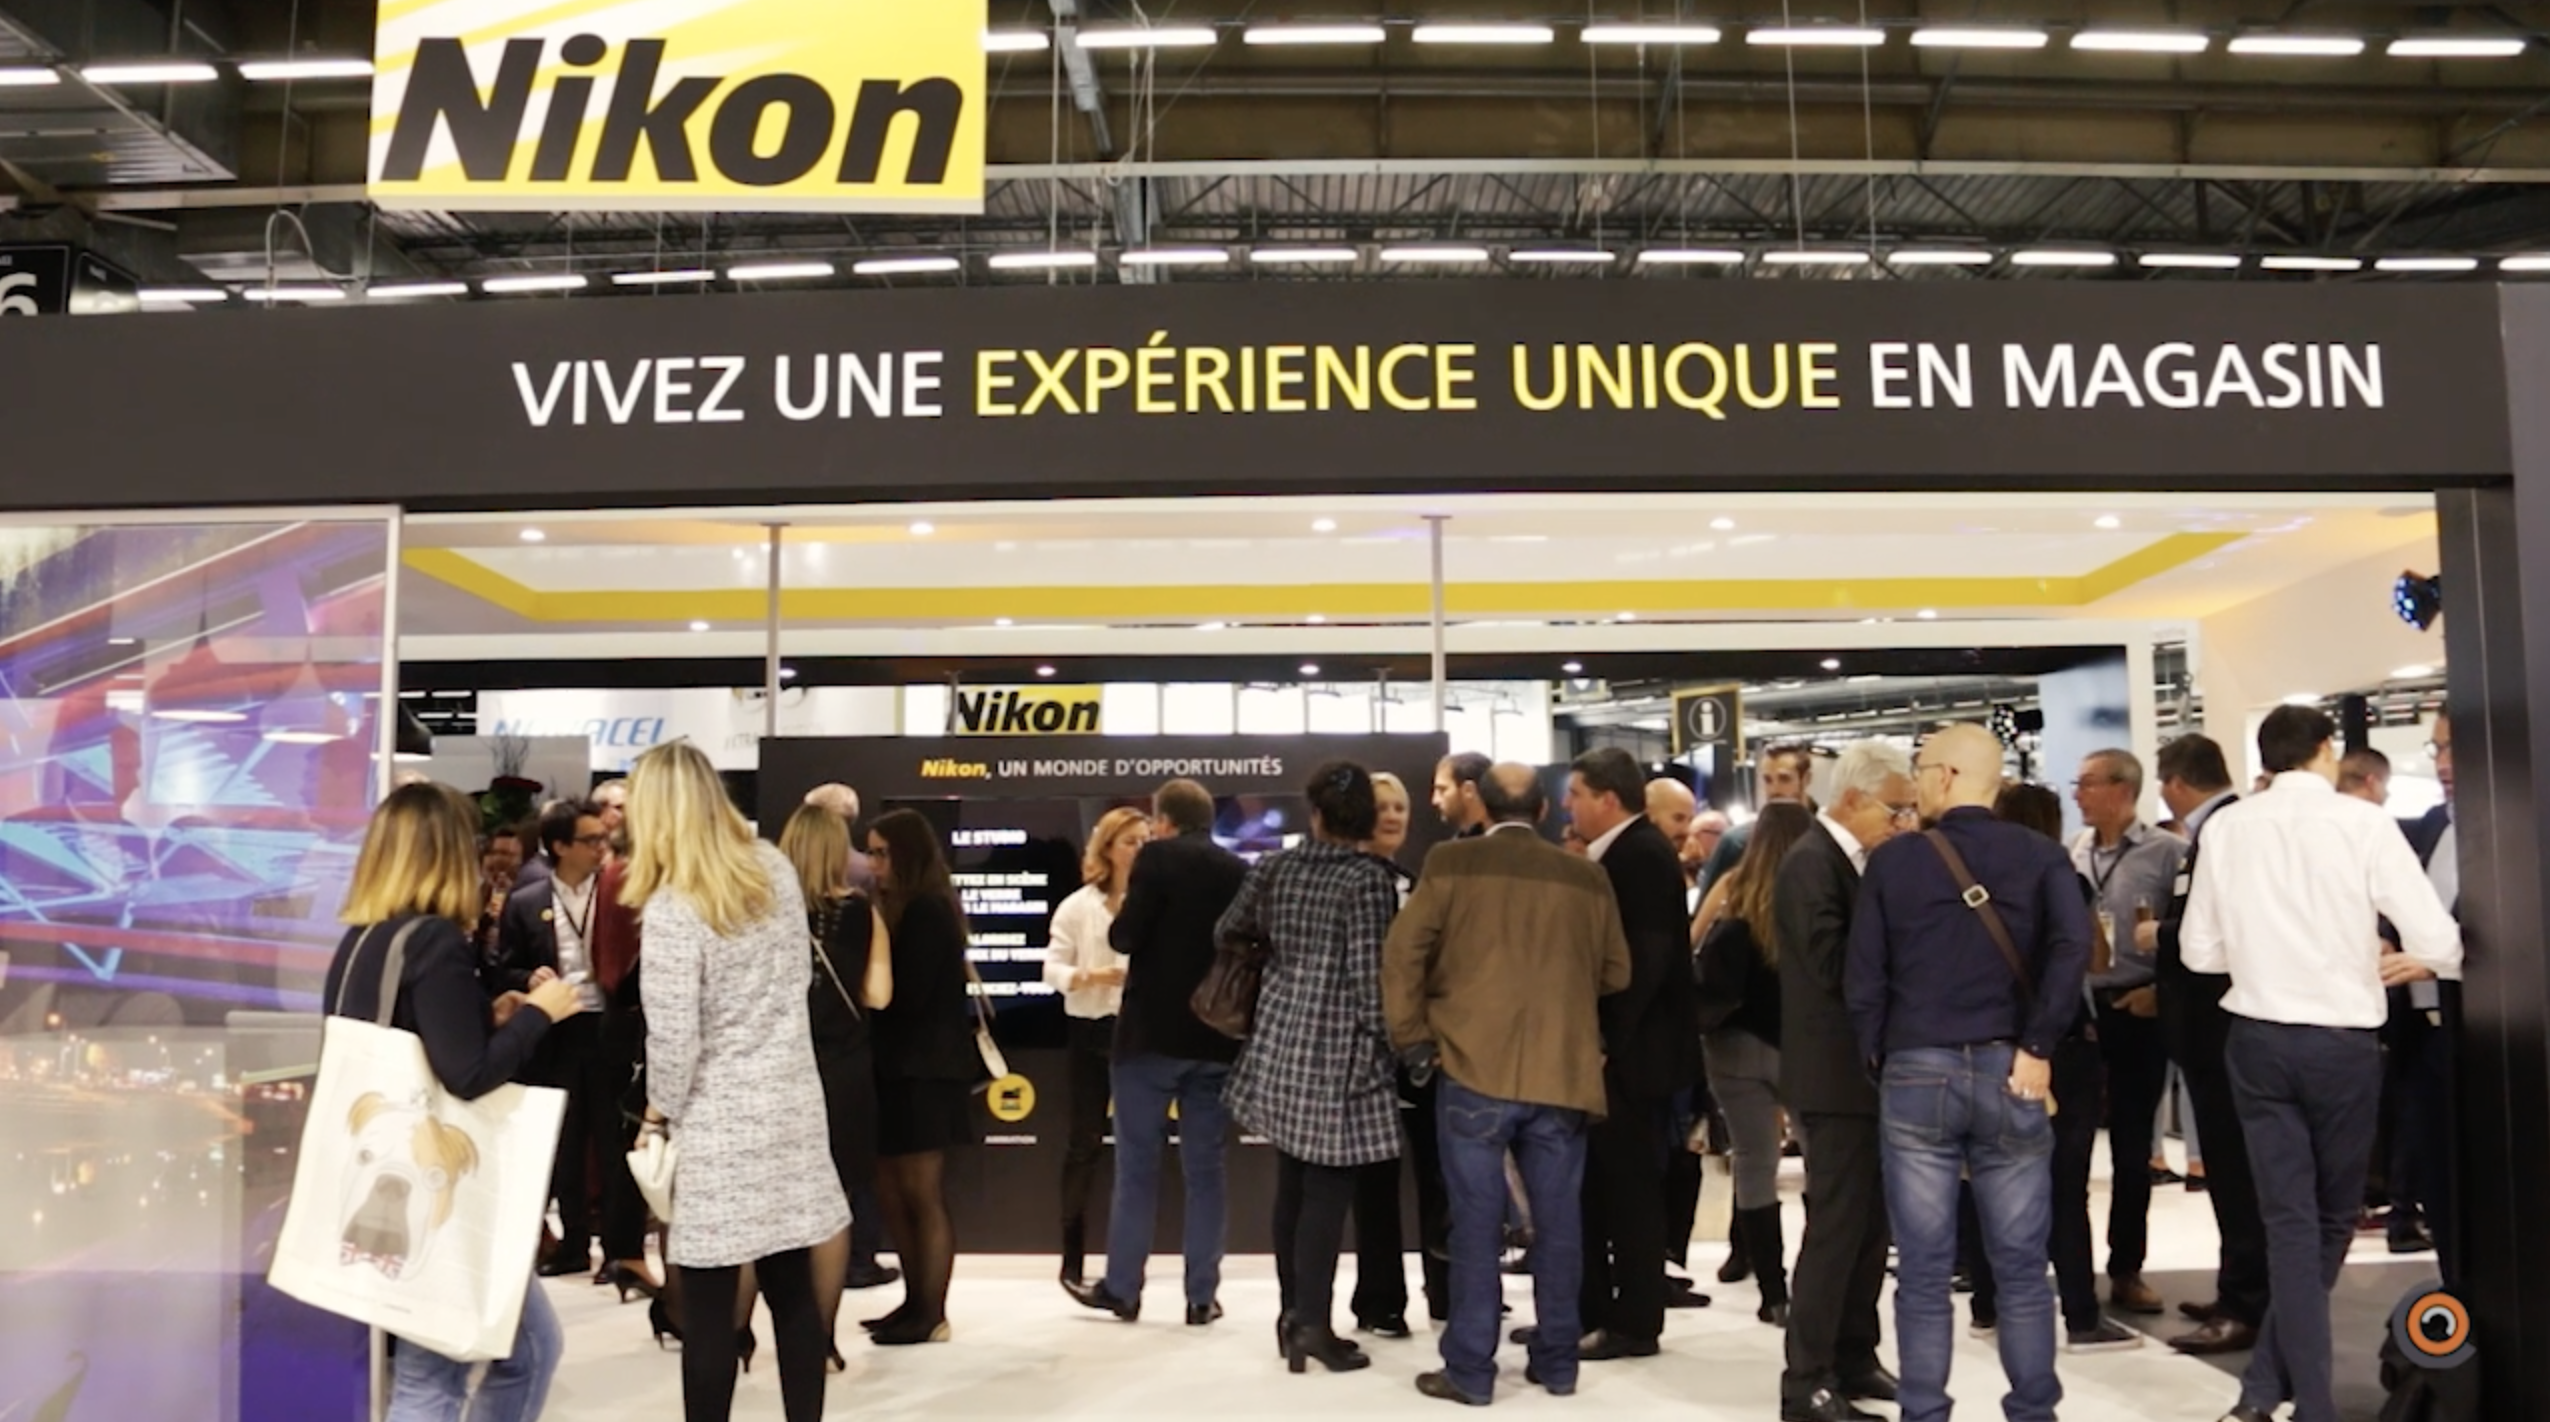 La "communauté des opticiens Nikon" témoigne